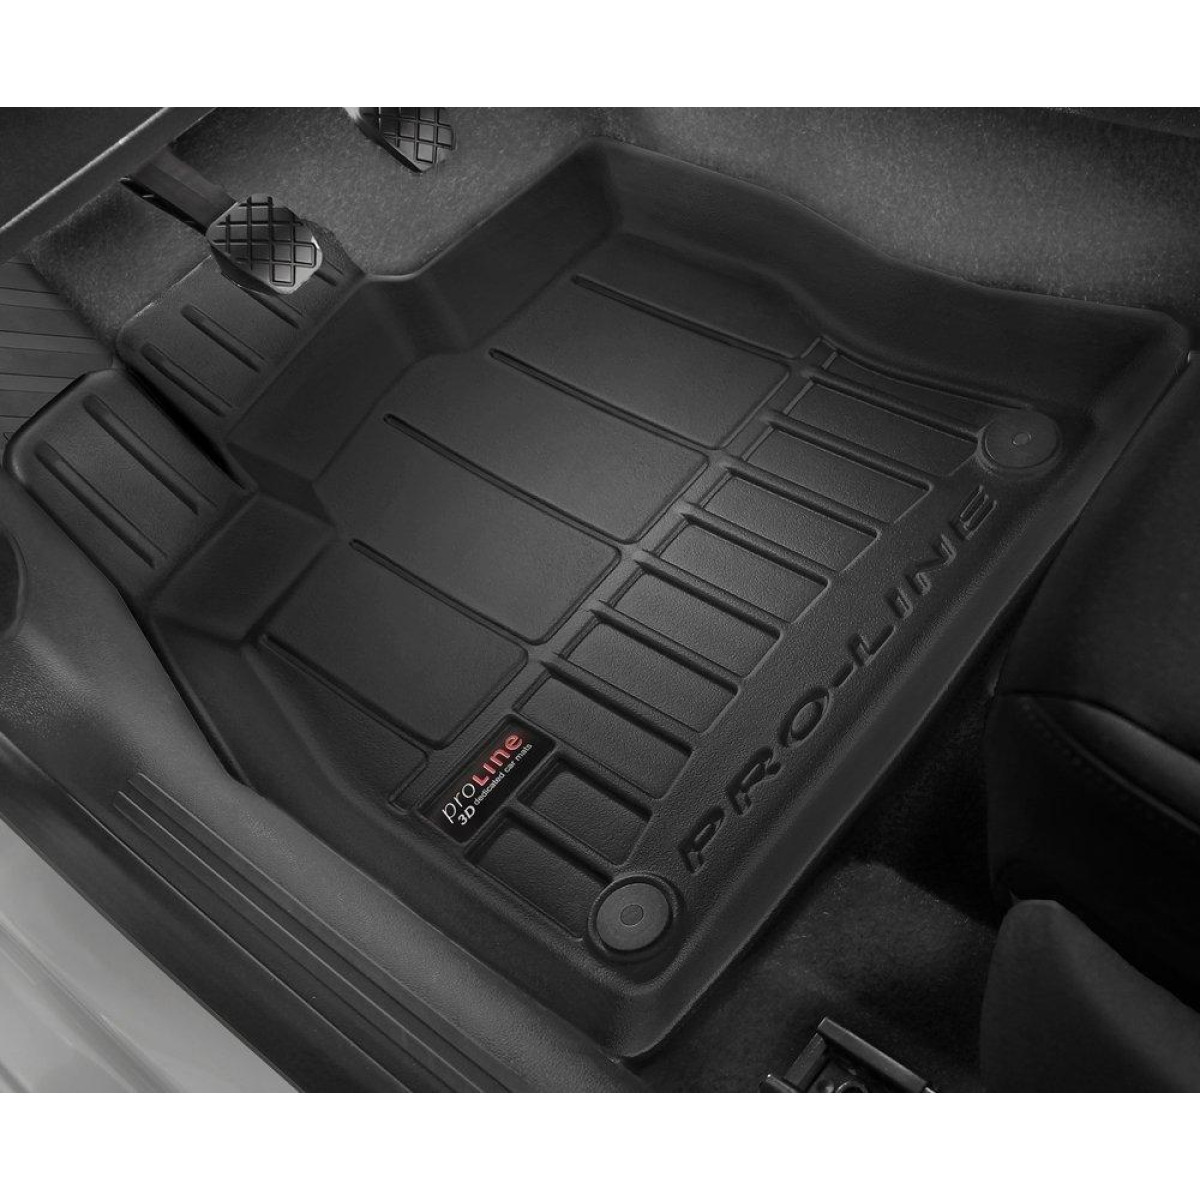 Guminiai kilimėliai Proline Volkswagen Golf VII Sportsvan 2014-2020m. / paaukštintais kraštais